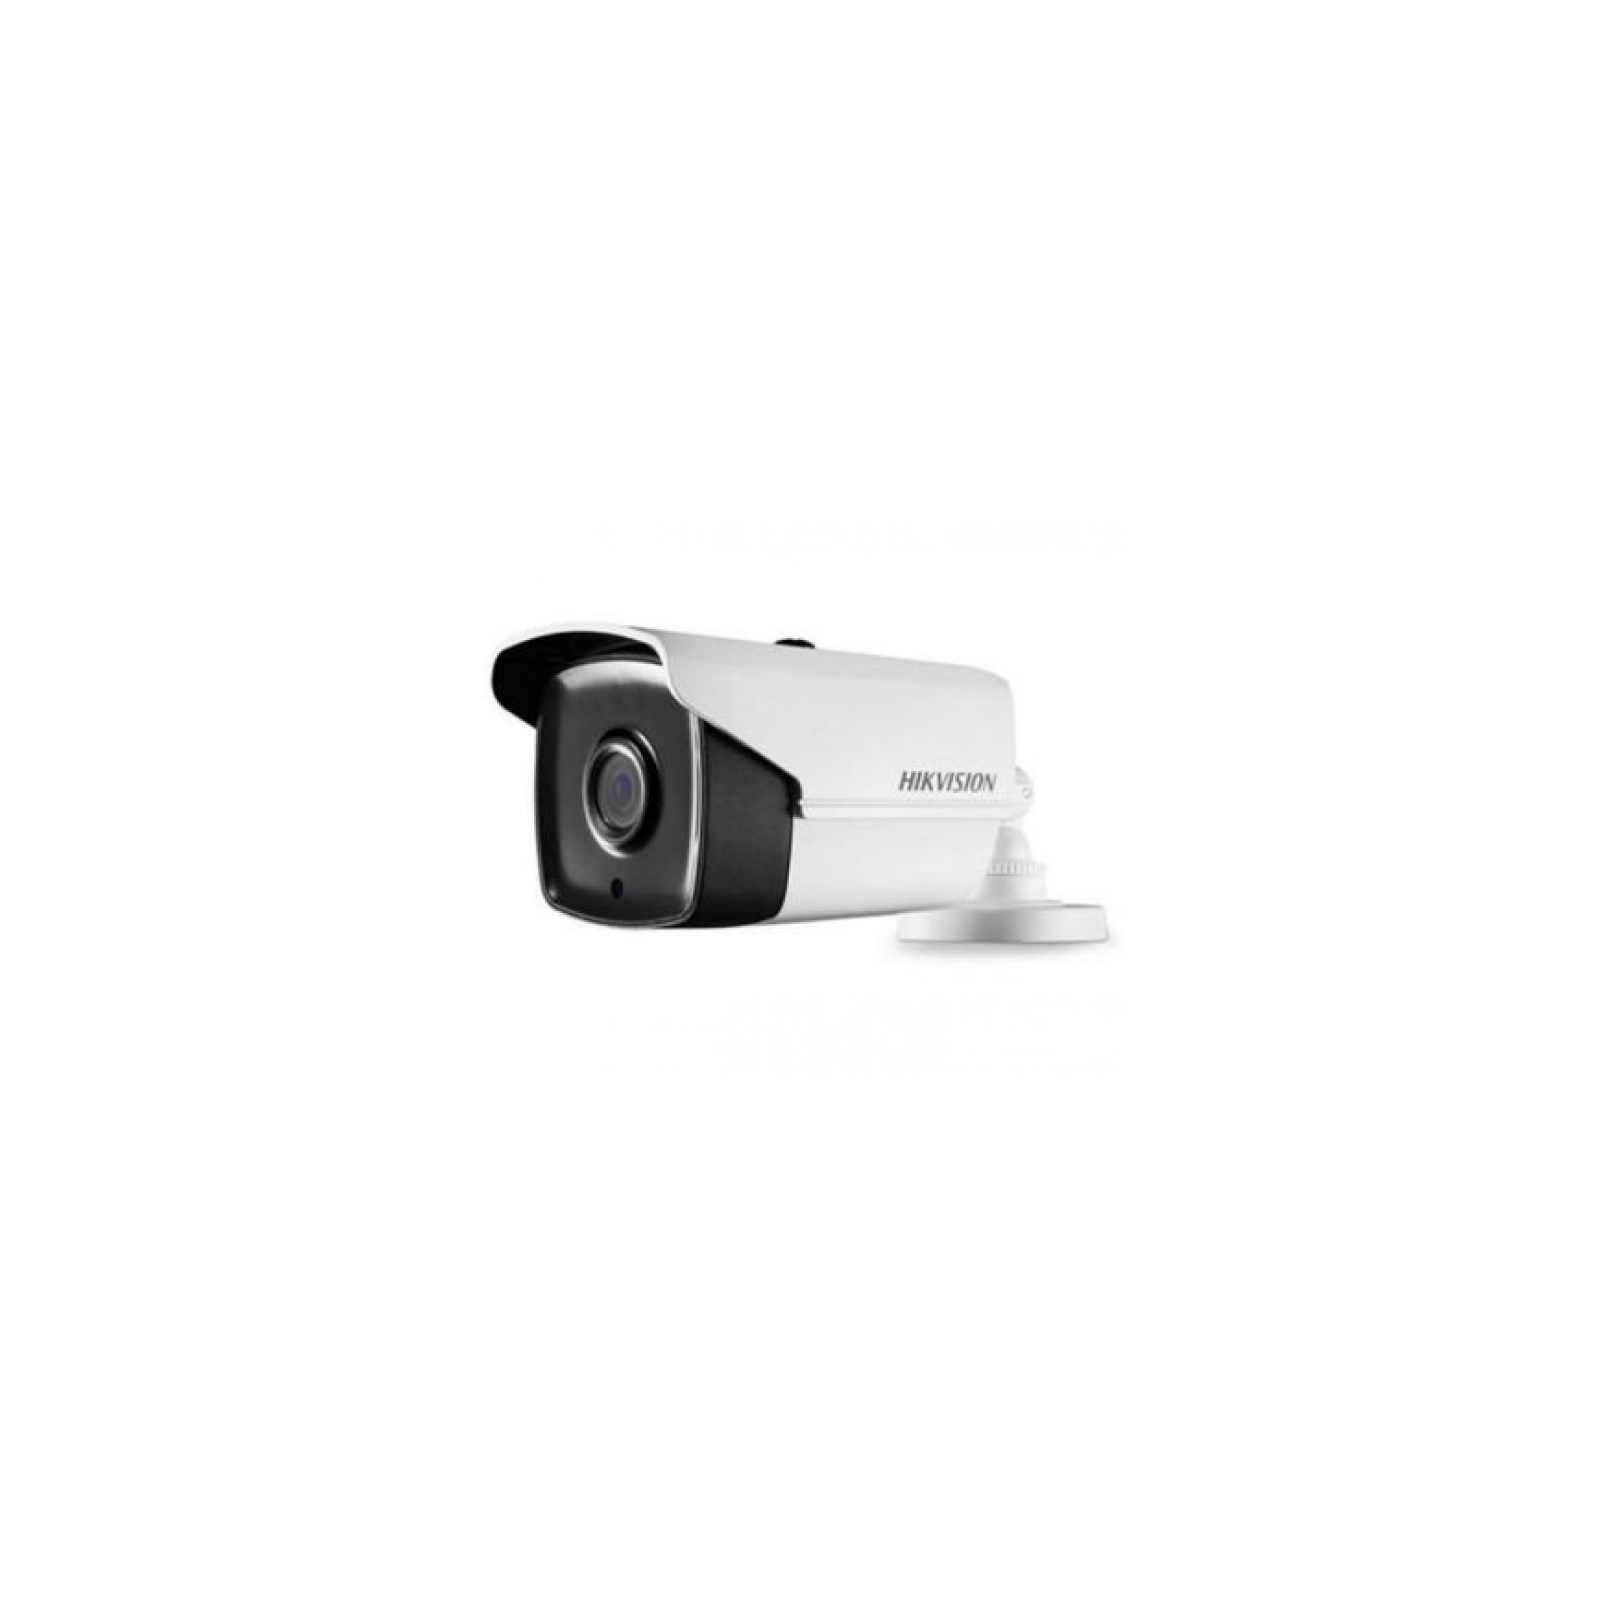 Камера відеоспостереження Hikvision DS-2CE16D0T-IT5E (3.6)